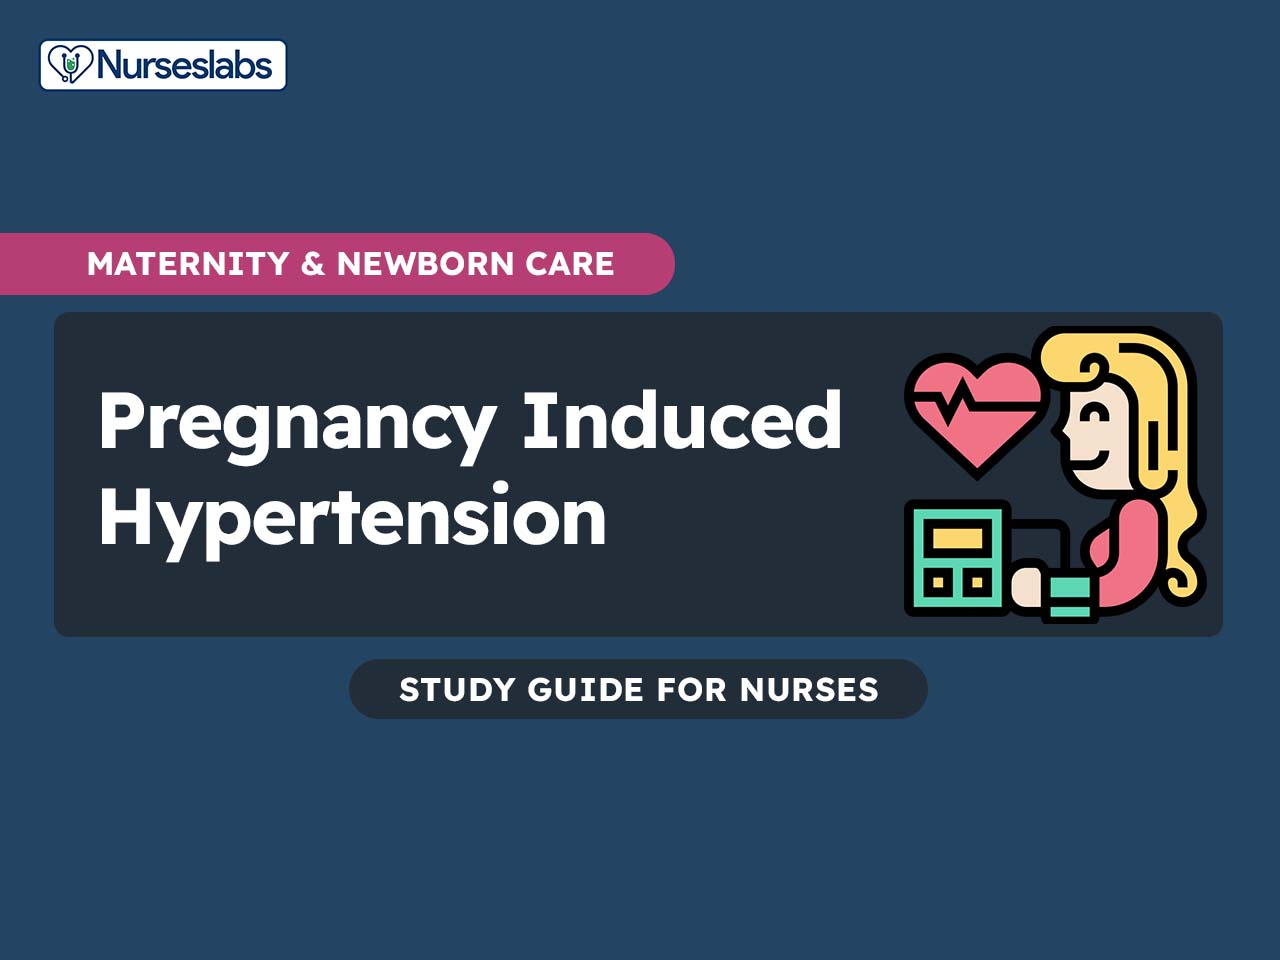 Severe hypertension in pregnancy: Hydralazine or labetalol: A